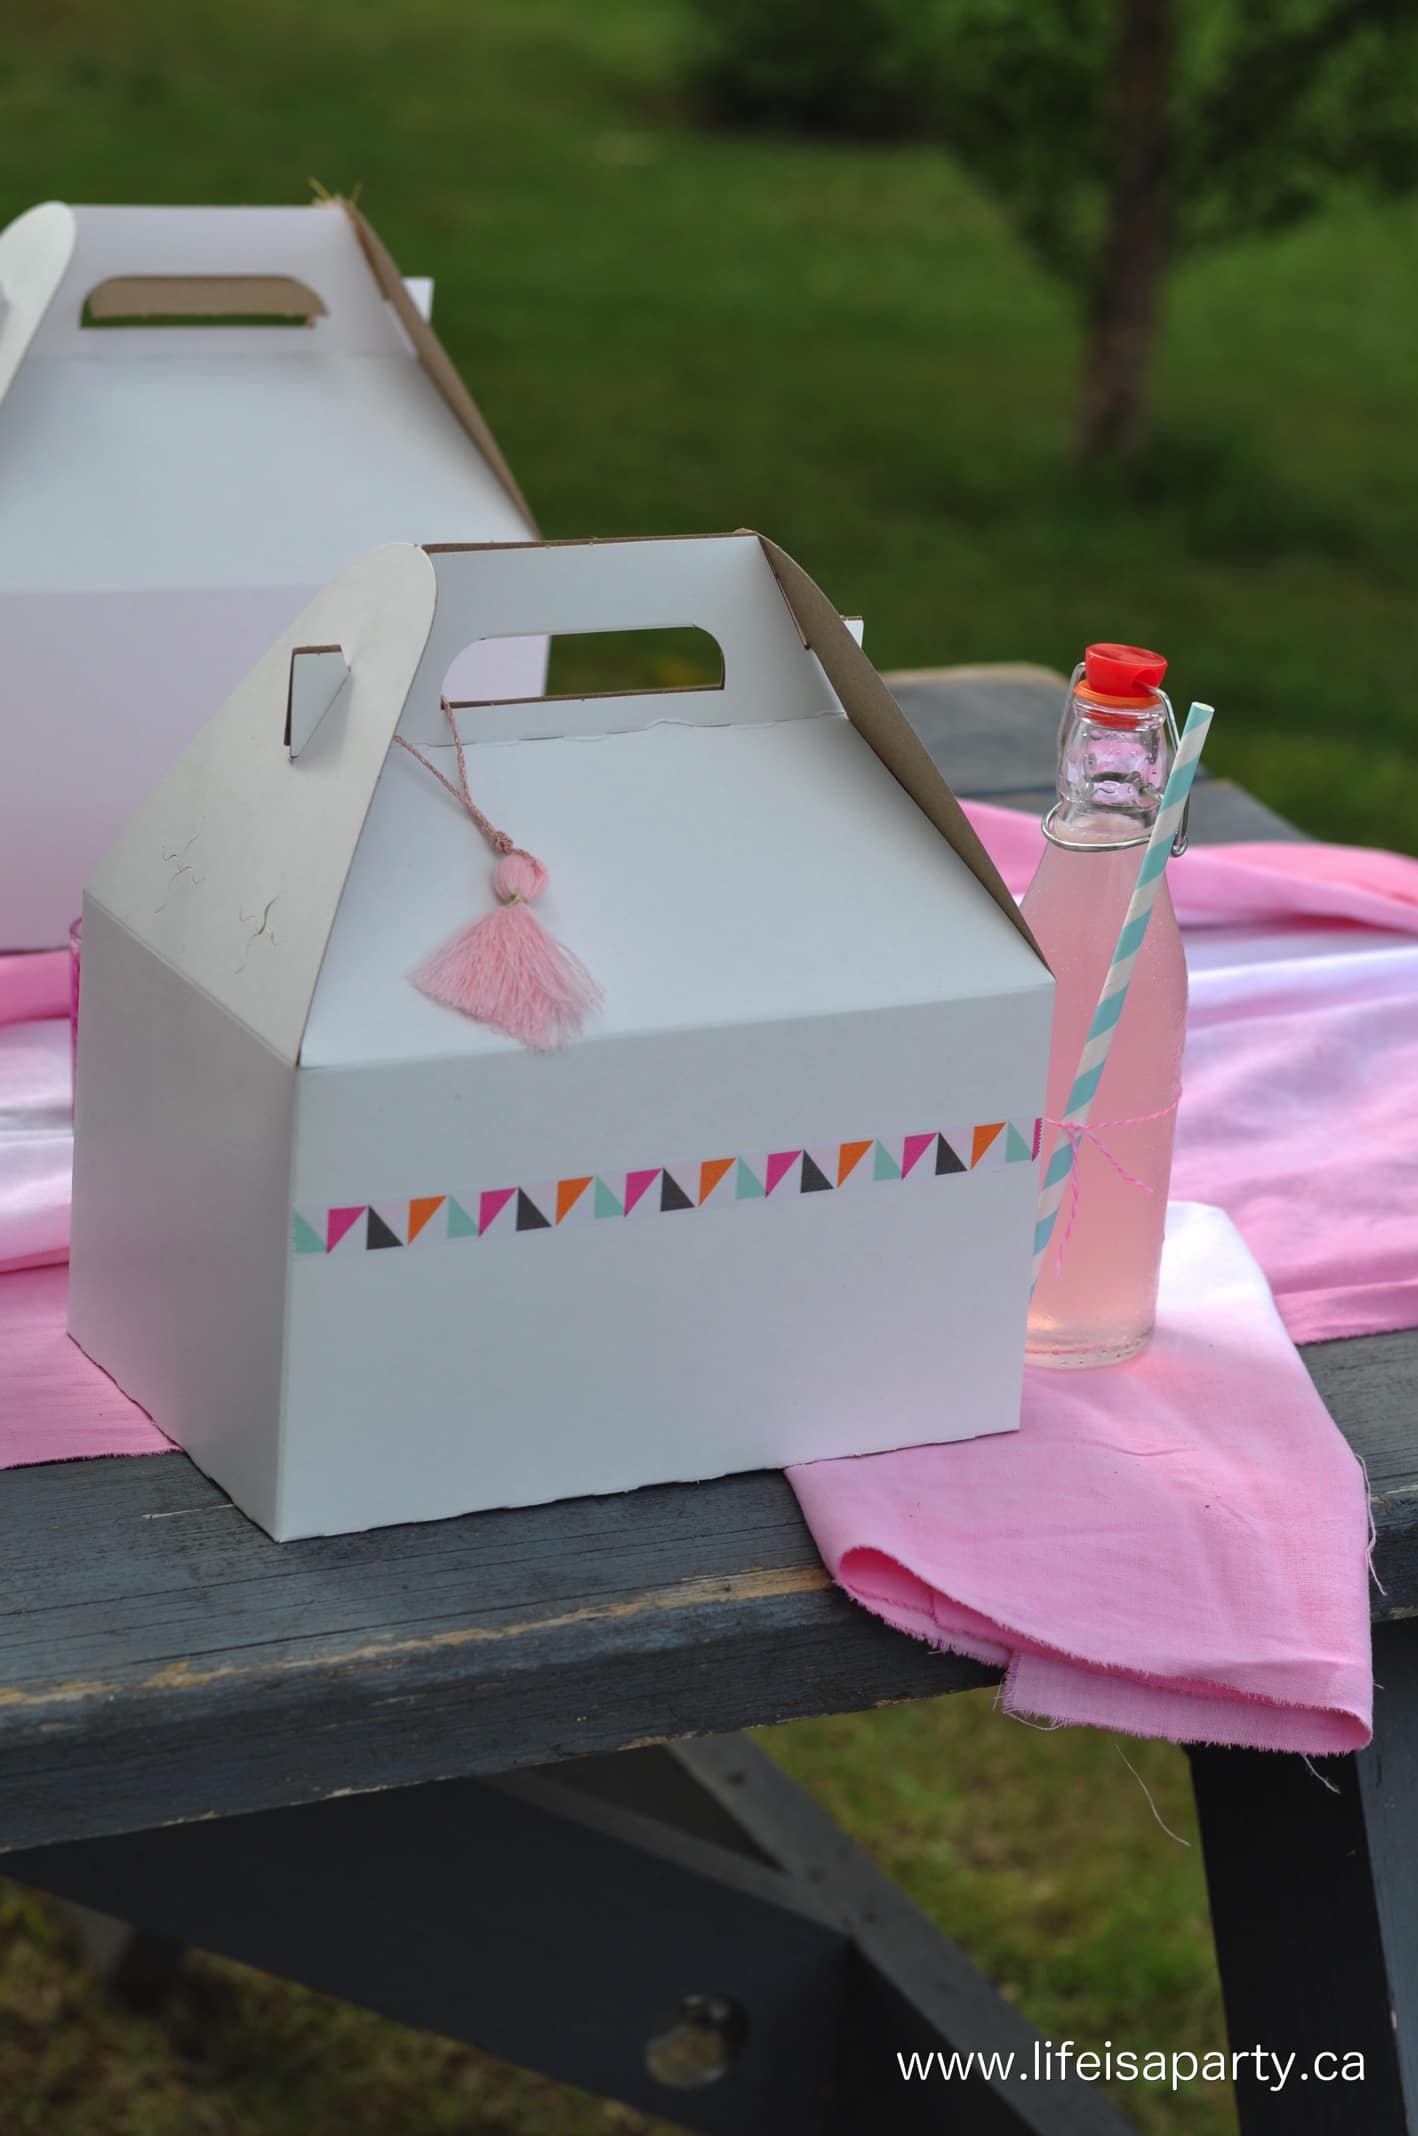 Individual picnic boxes